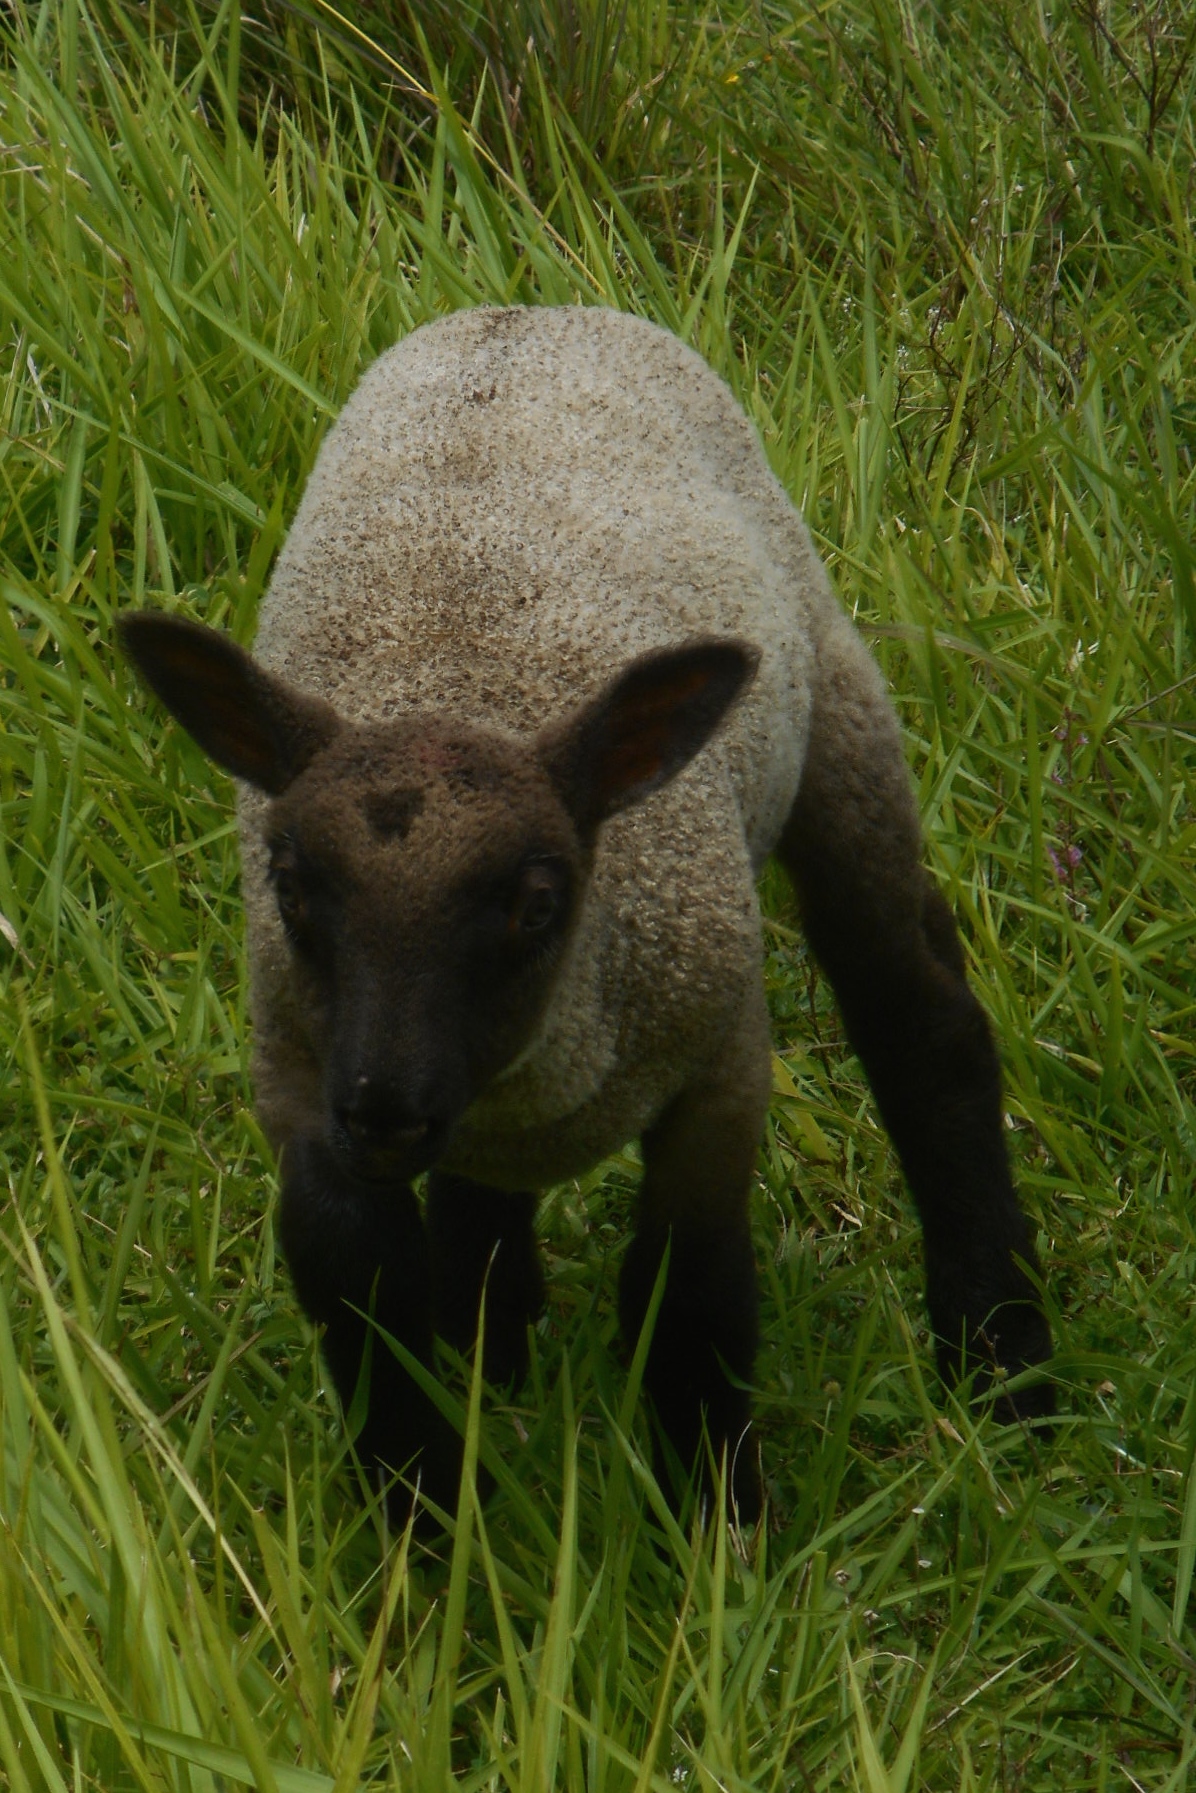 May's lamb